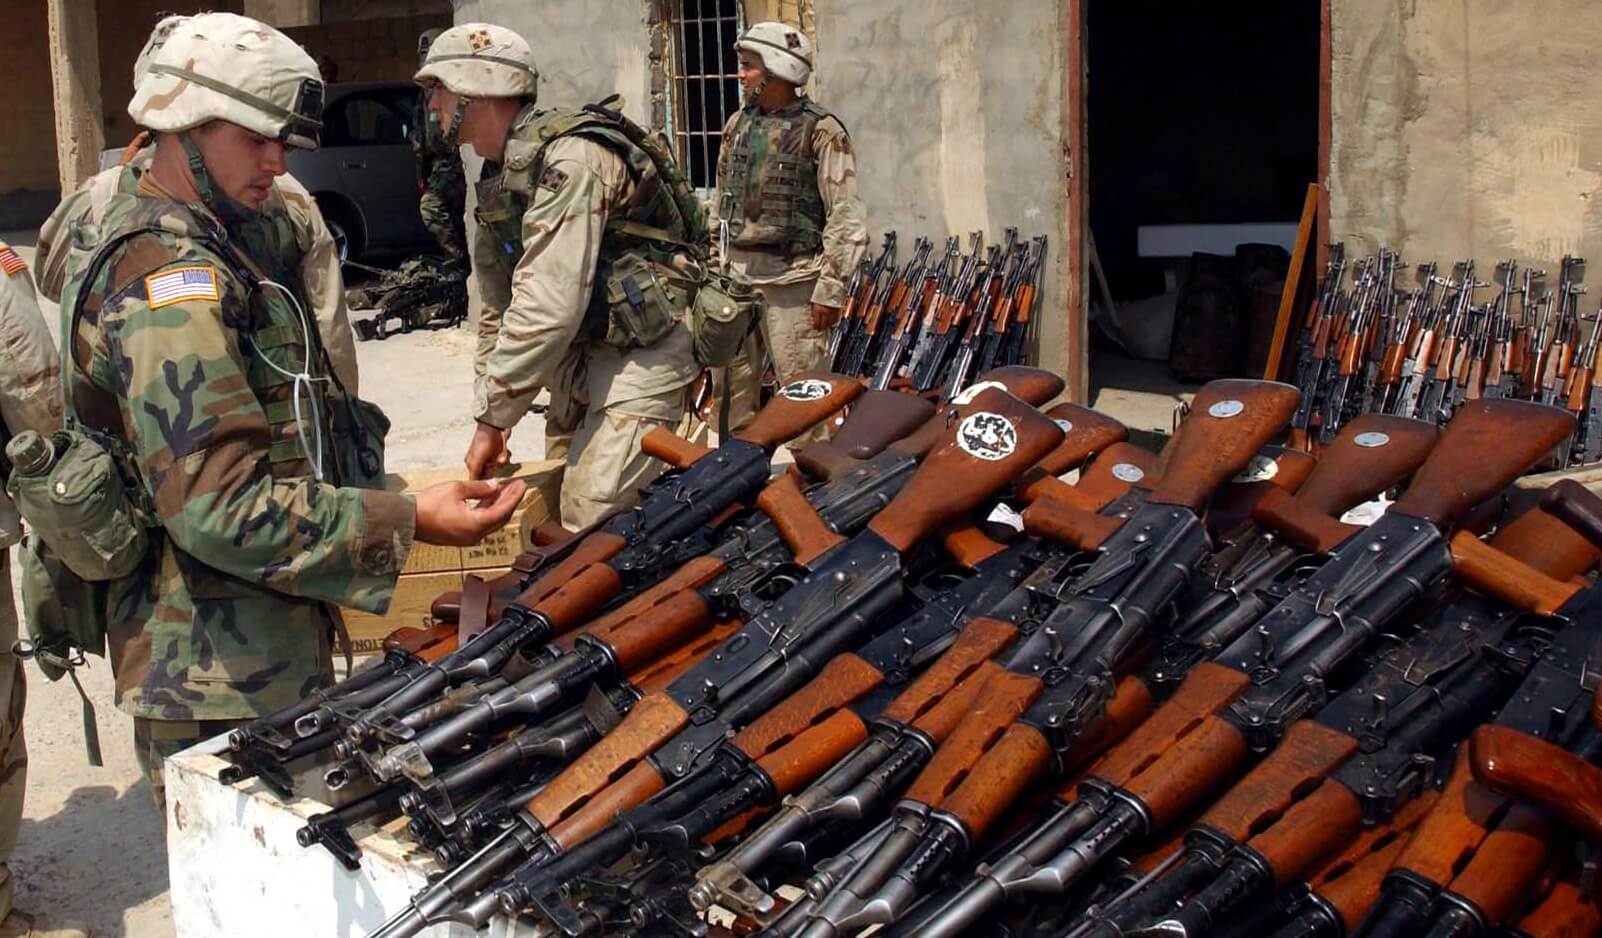 AK-47 mới cứng của Mỹ tại Afganistan